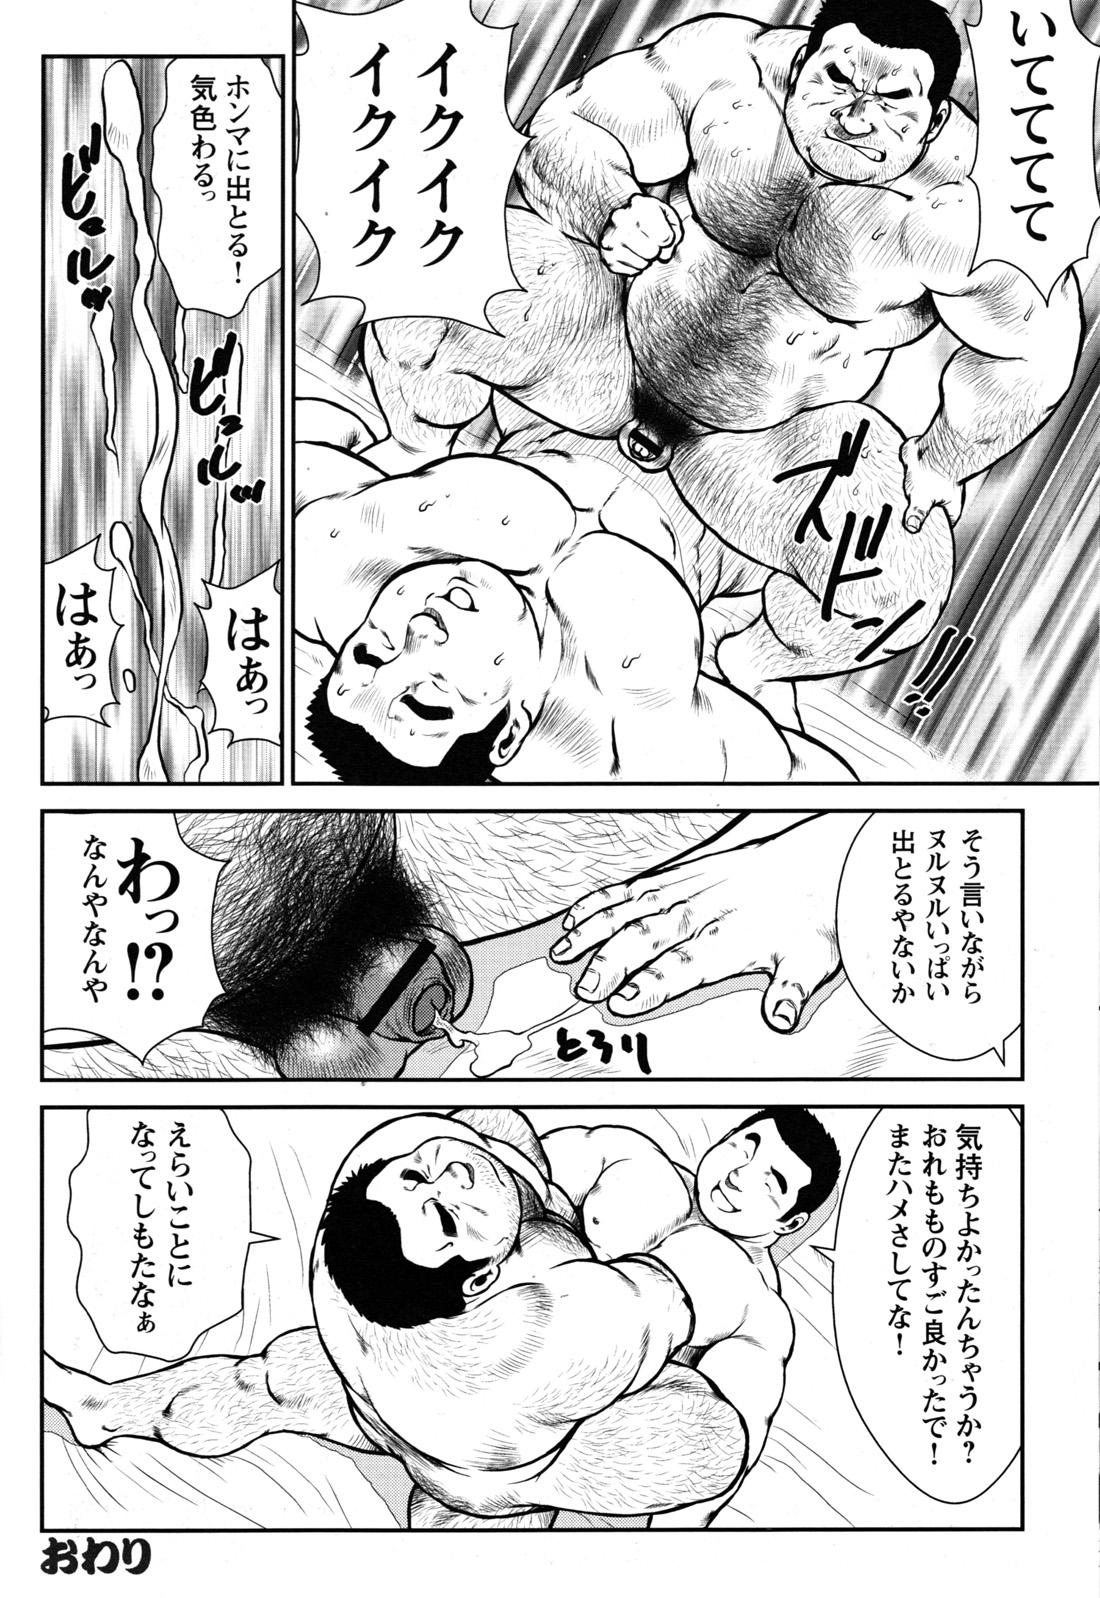 Comic G-men Gaho No.09 Gacchibi Zeme 111